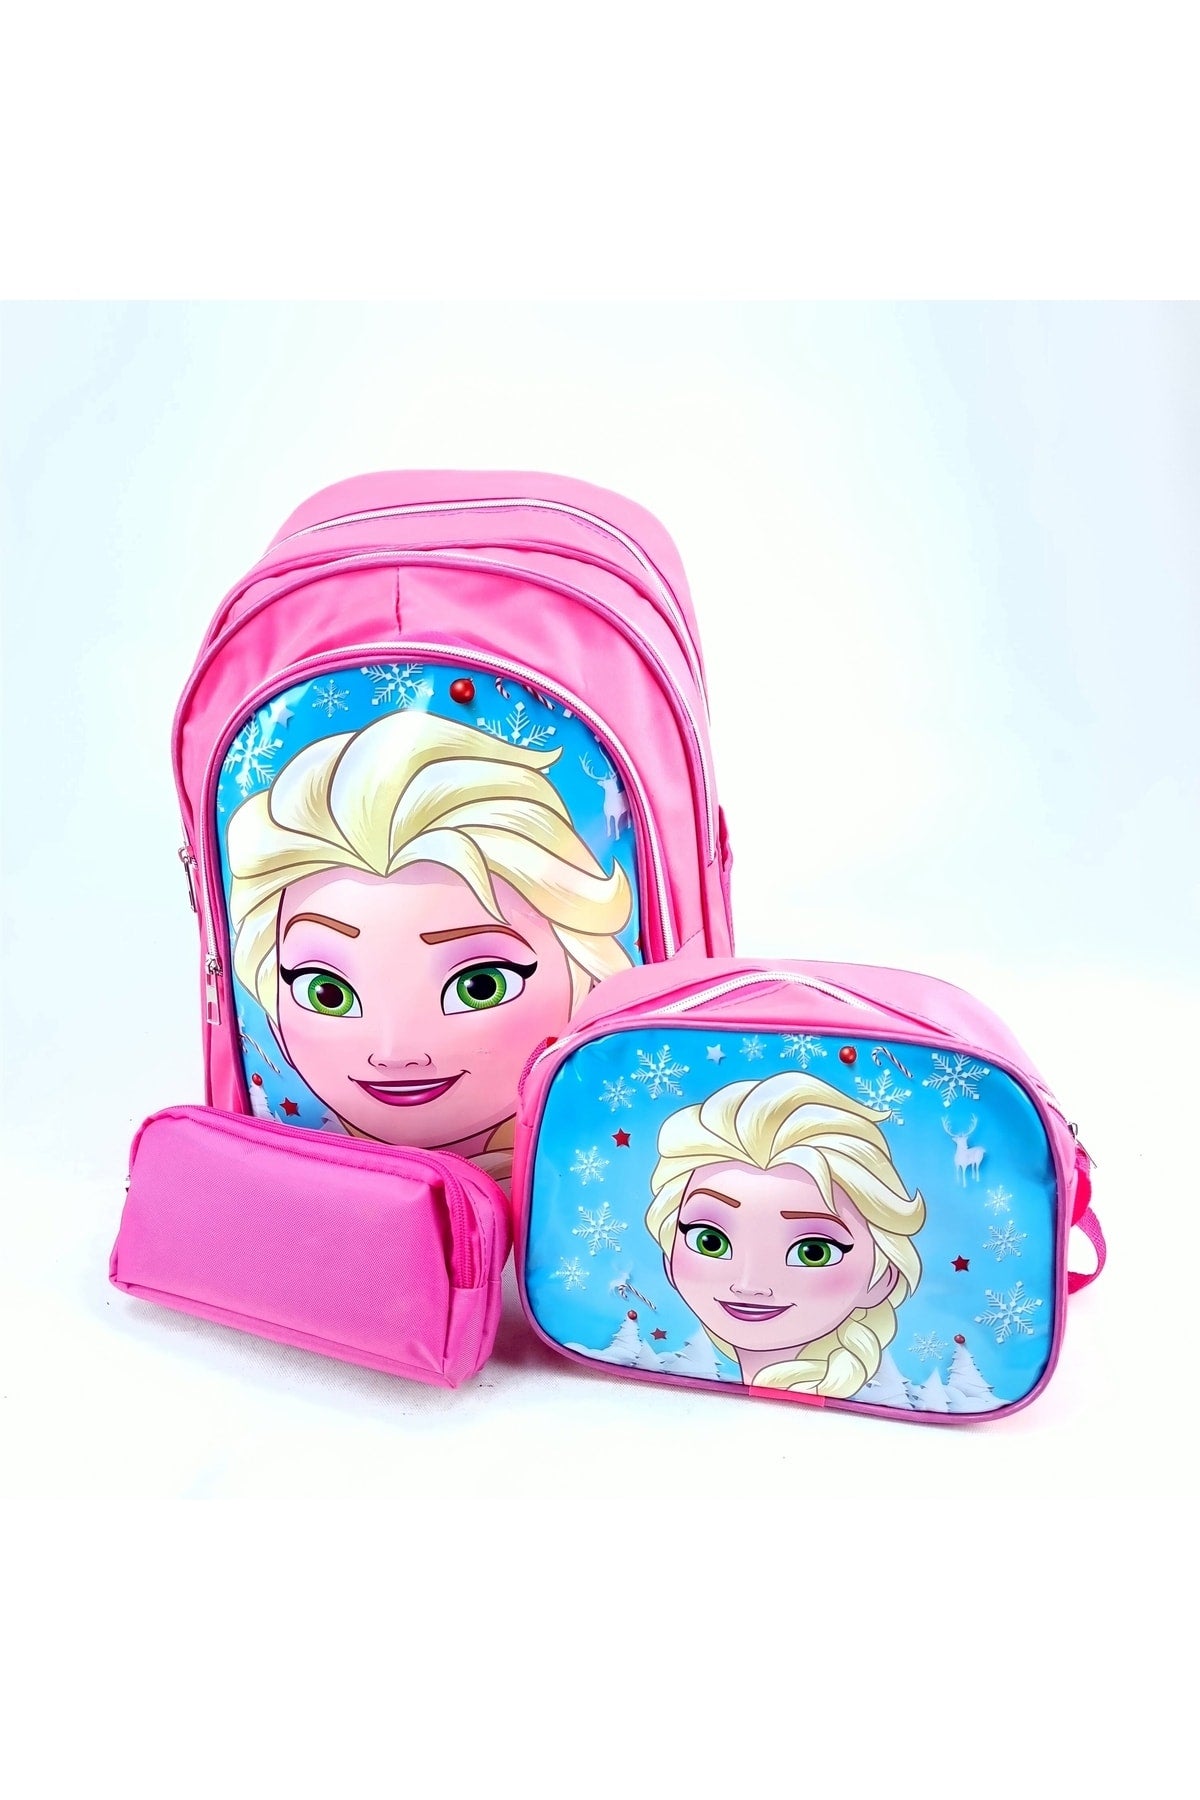 Girl Elsa Picture Lunch Box Gift Primary School Kindergarten Student School Bag